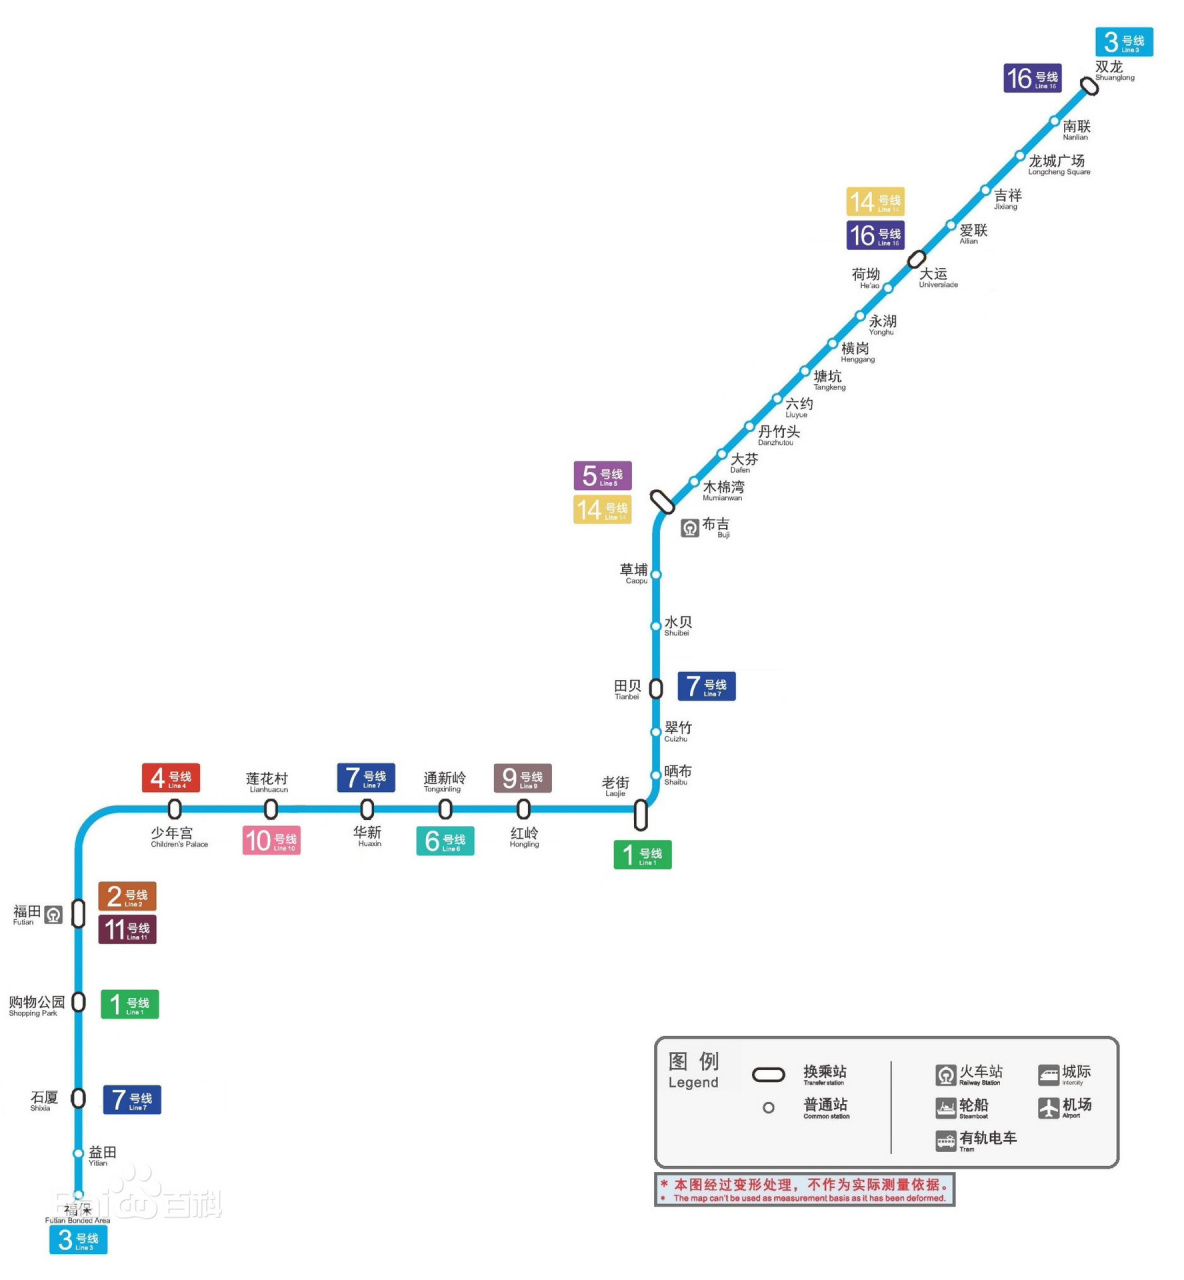 3一分钟带你认识深圳地铁:3号线 深圳地铁3号线(shenzhen metro line